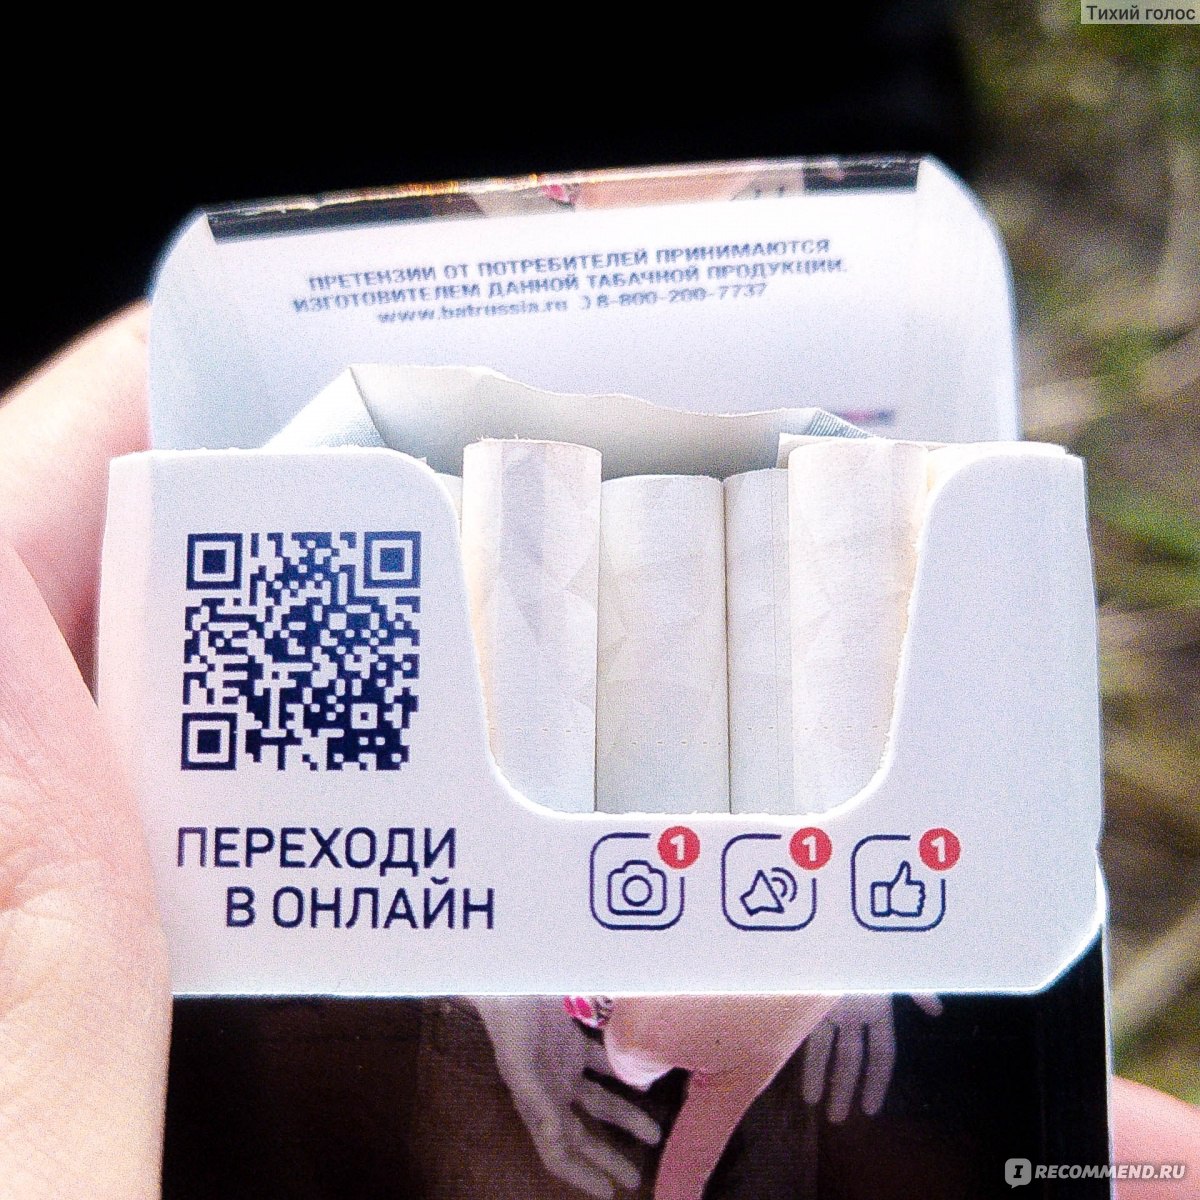 Qr код сигарет. Коды сигарет. Электронные сигареты в пачке. QR код на пачке.